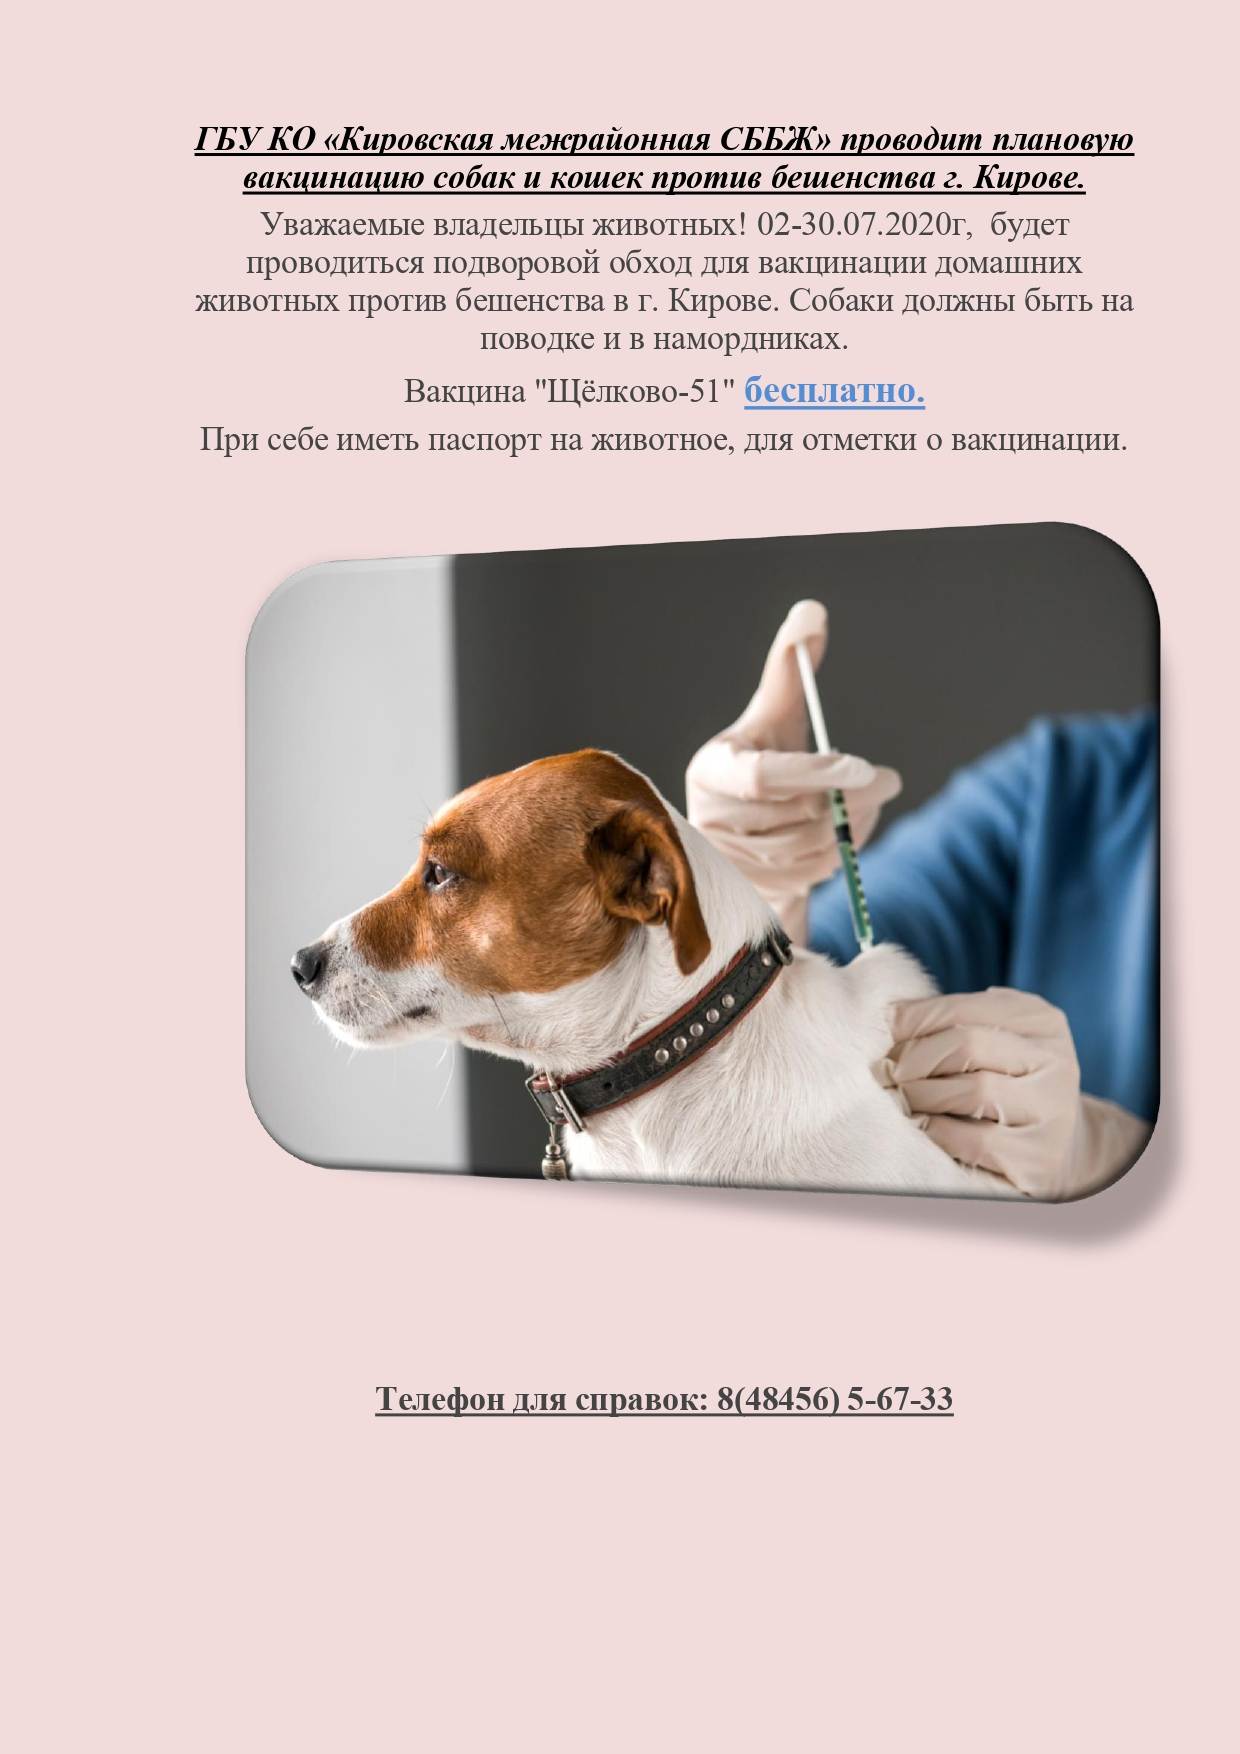 Нужно ли глистогонить и кормить собаку перед прививкой - график вакцинации собак